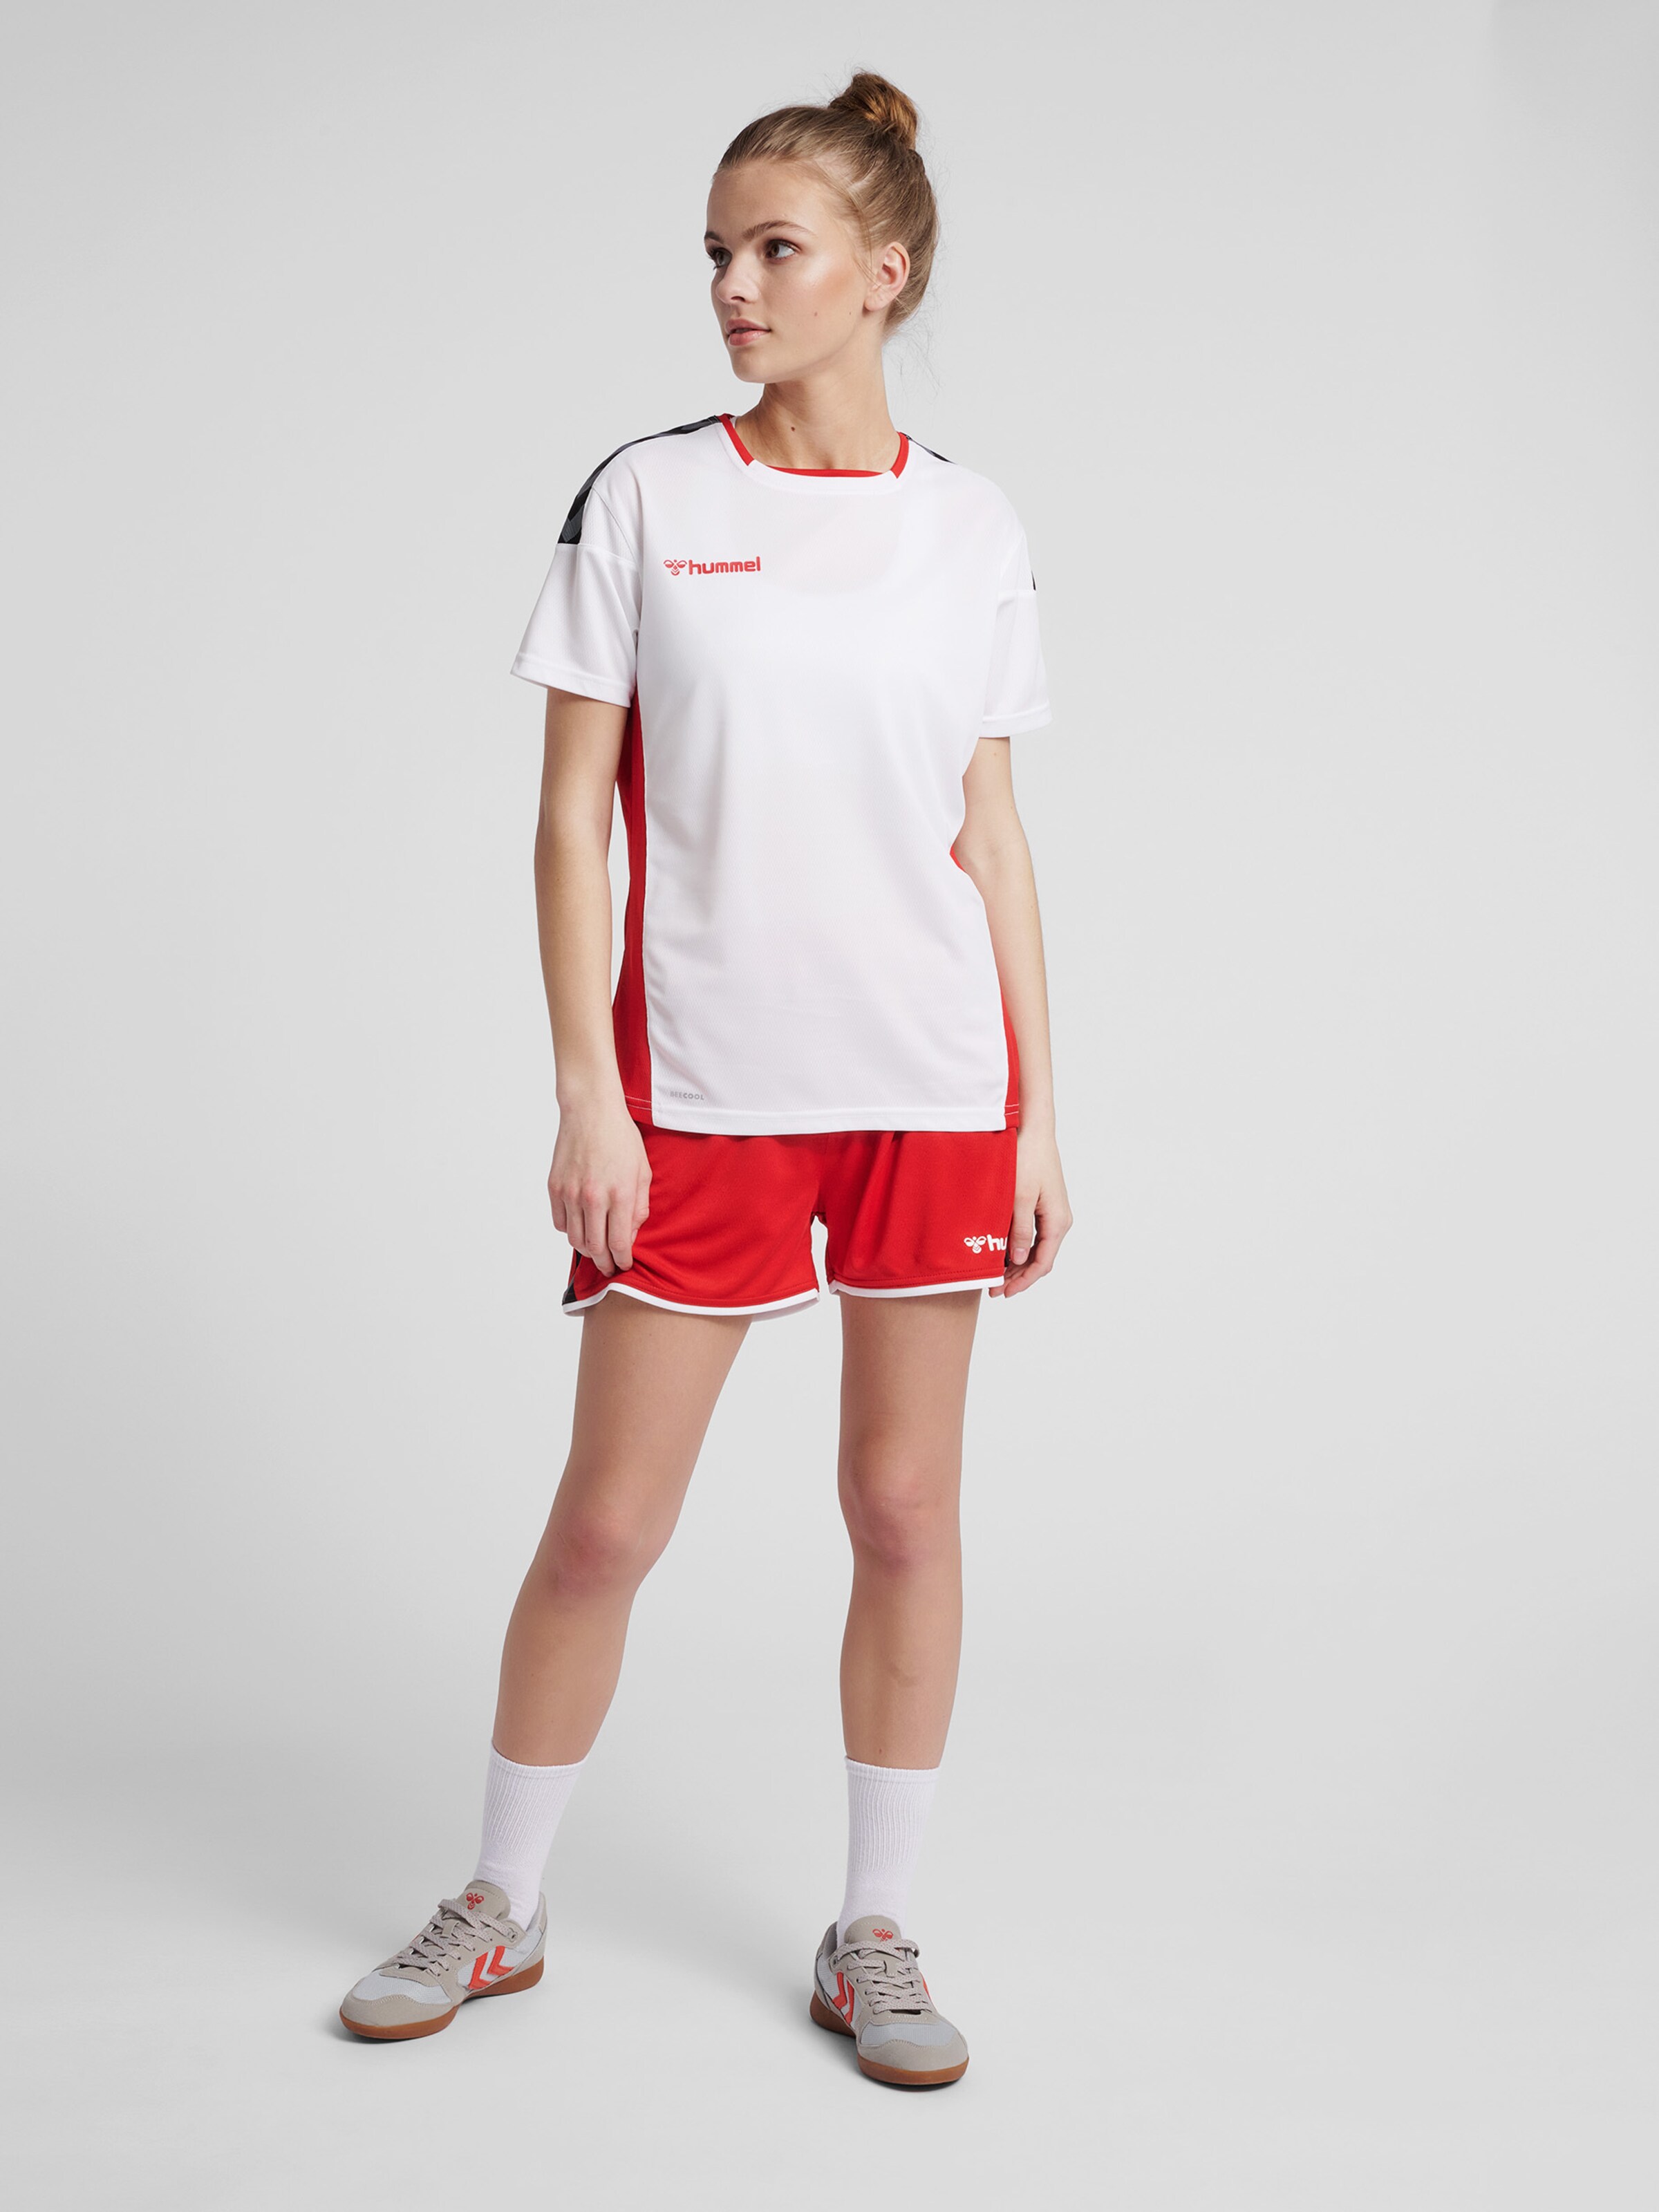 Frauen Sportarten Hummel Trainingsshirt in Weiß - XP63041